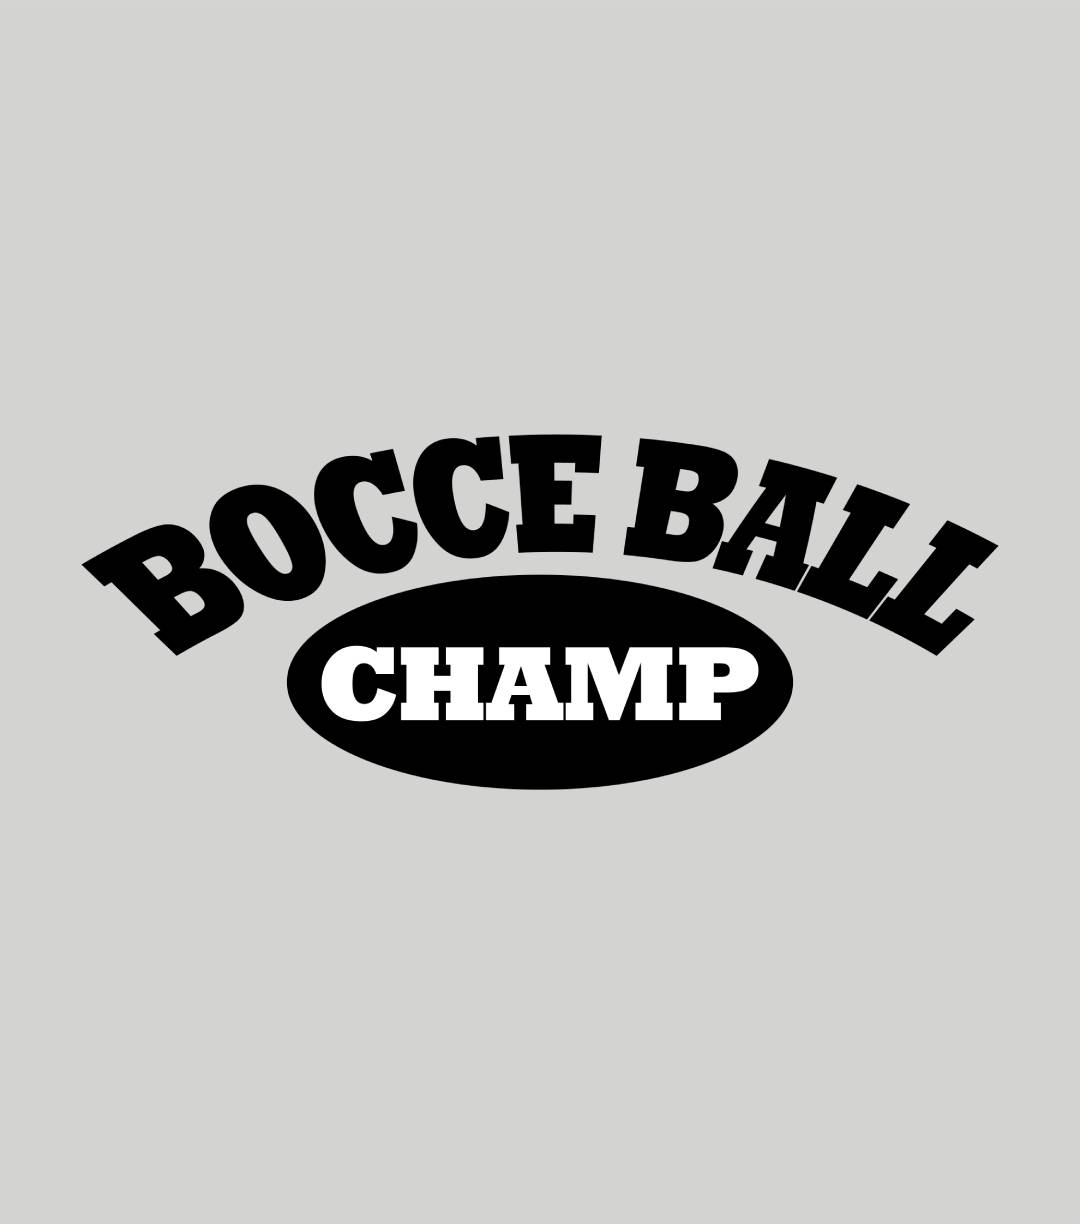 Bocce Ball Champ Shirt